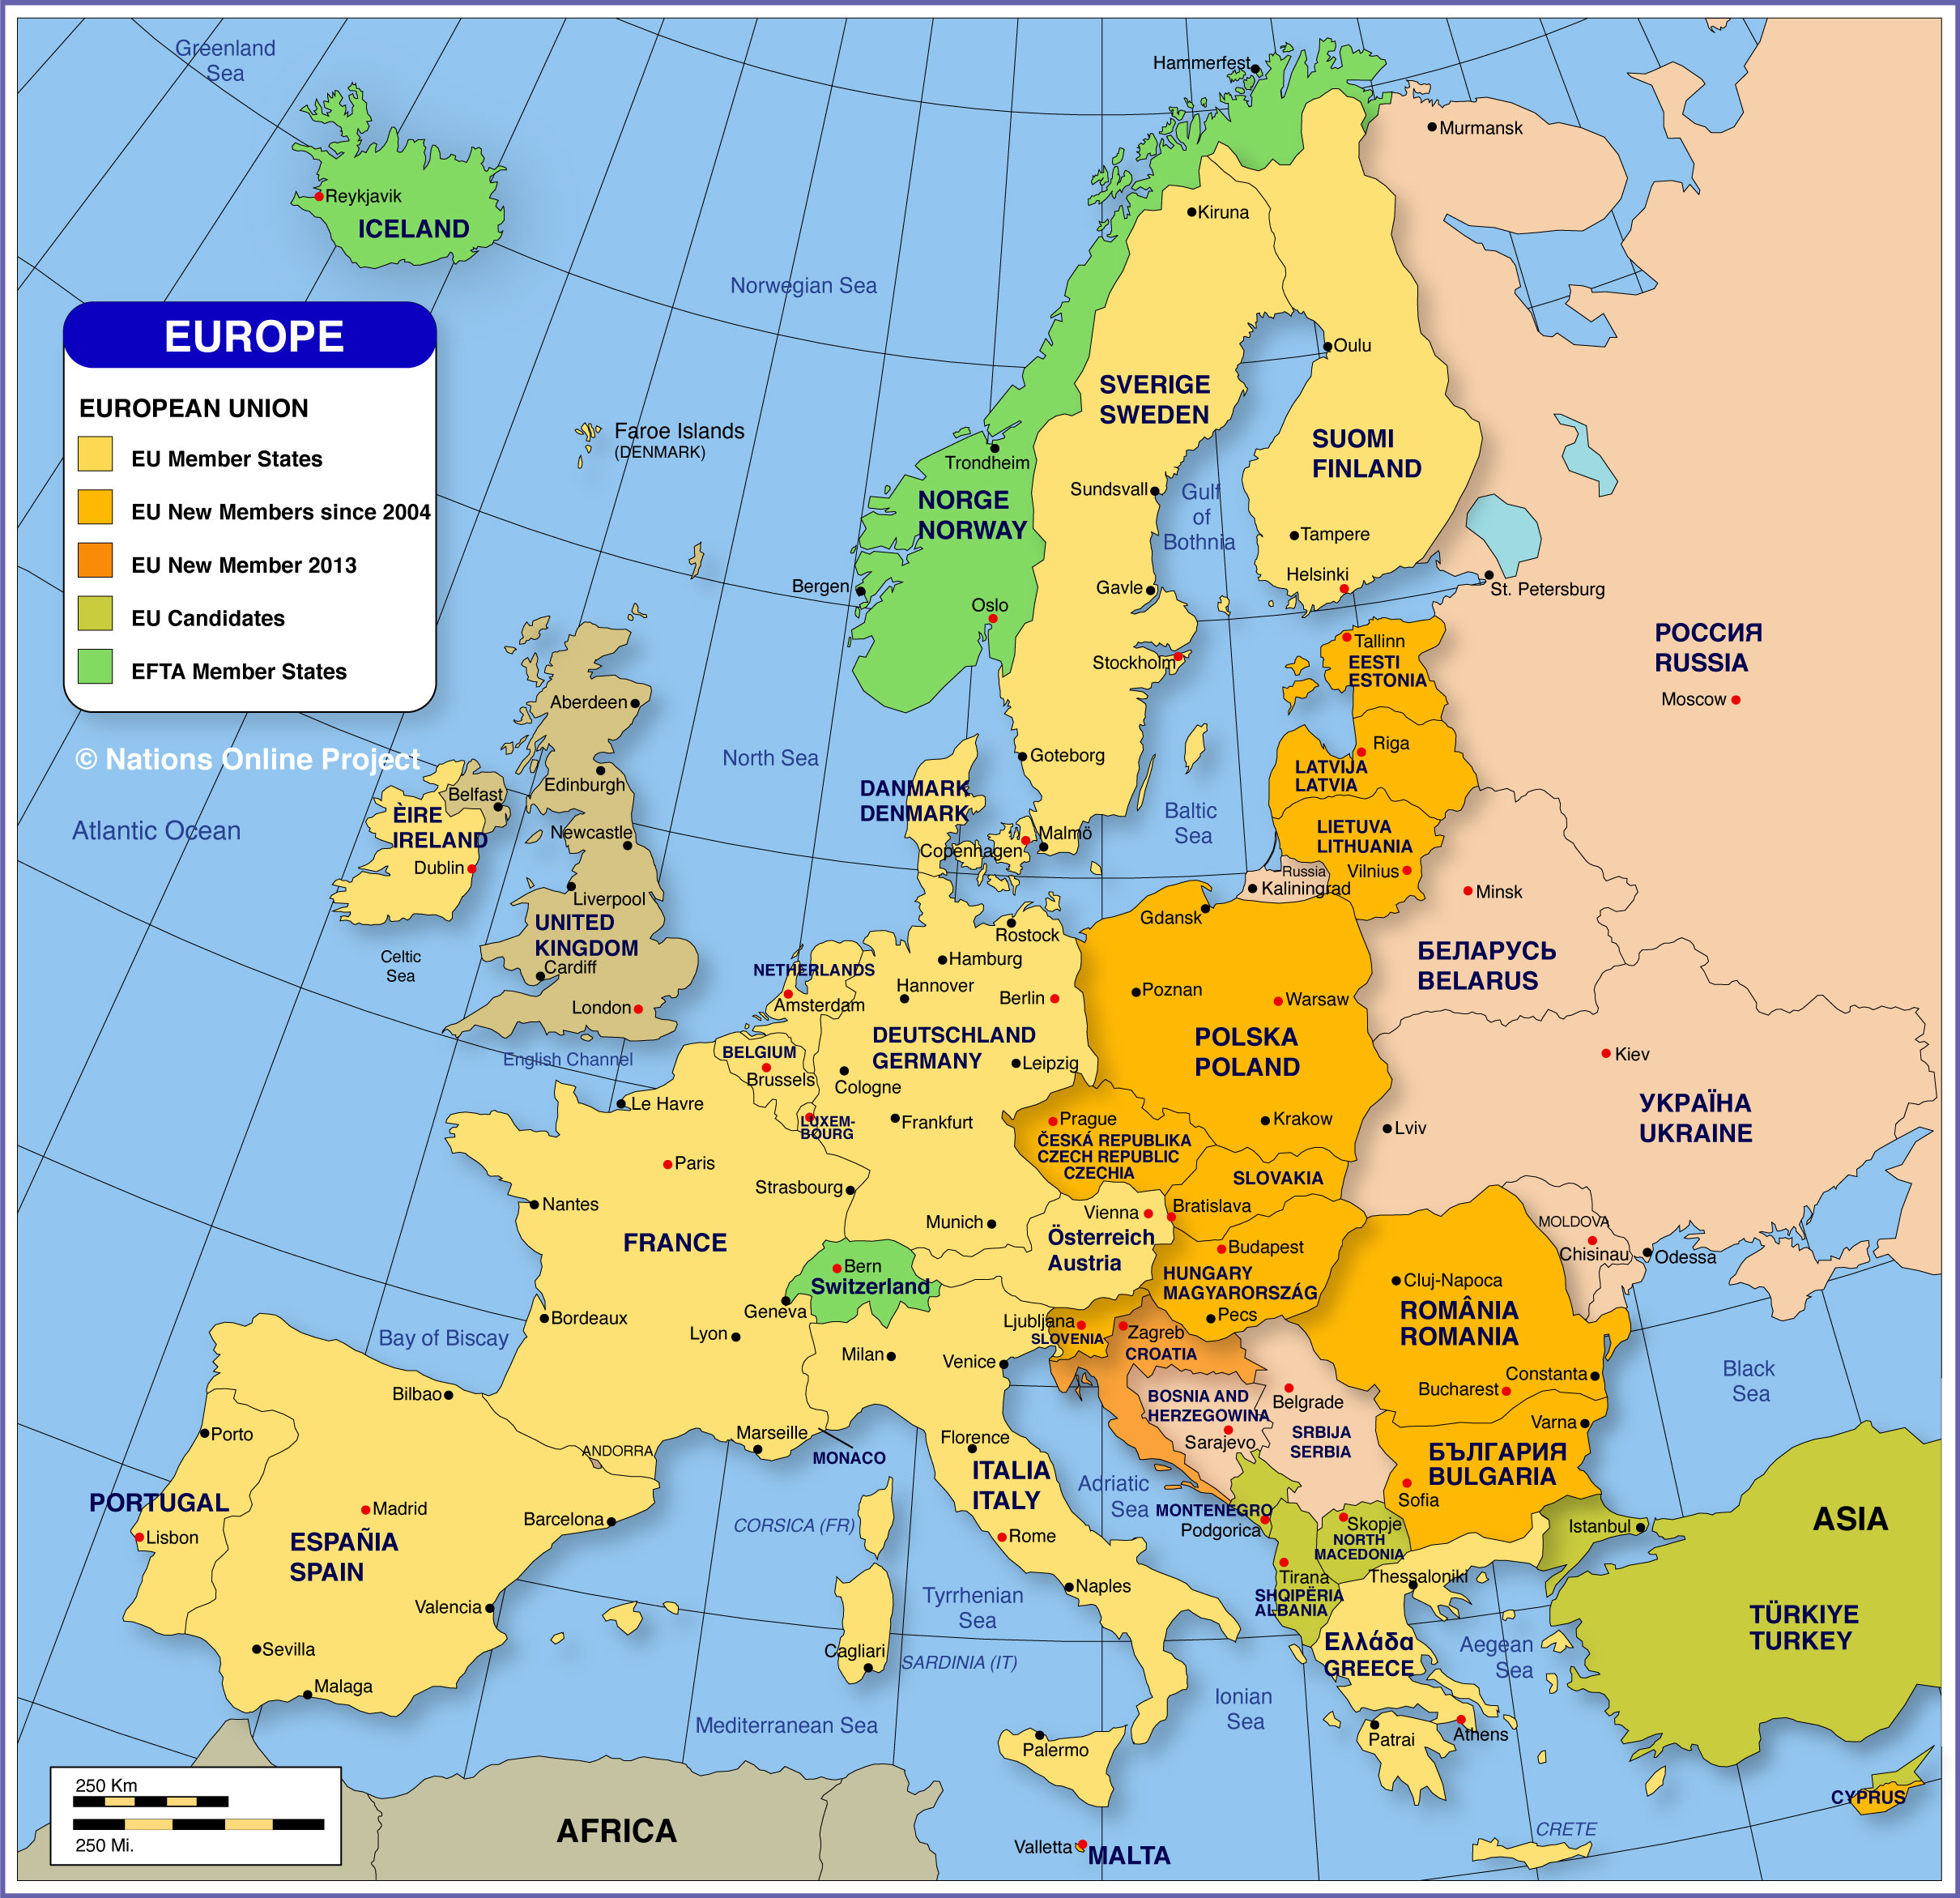 Bản đồ Châu Âu khổ lớn: Bạn đang cần một bản đồ Châu Âu khổ lớn để giúp cho việc học tập và khám phá? Đừng lo lắng! Hãy theo dõi hình ảnh này để tìm kiếm một bản đồ hoàn hảo cho bạn.